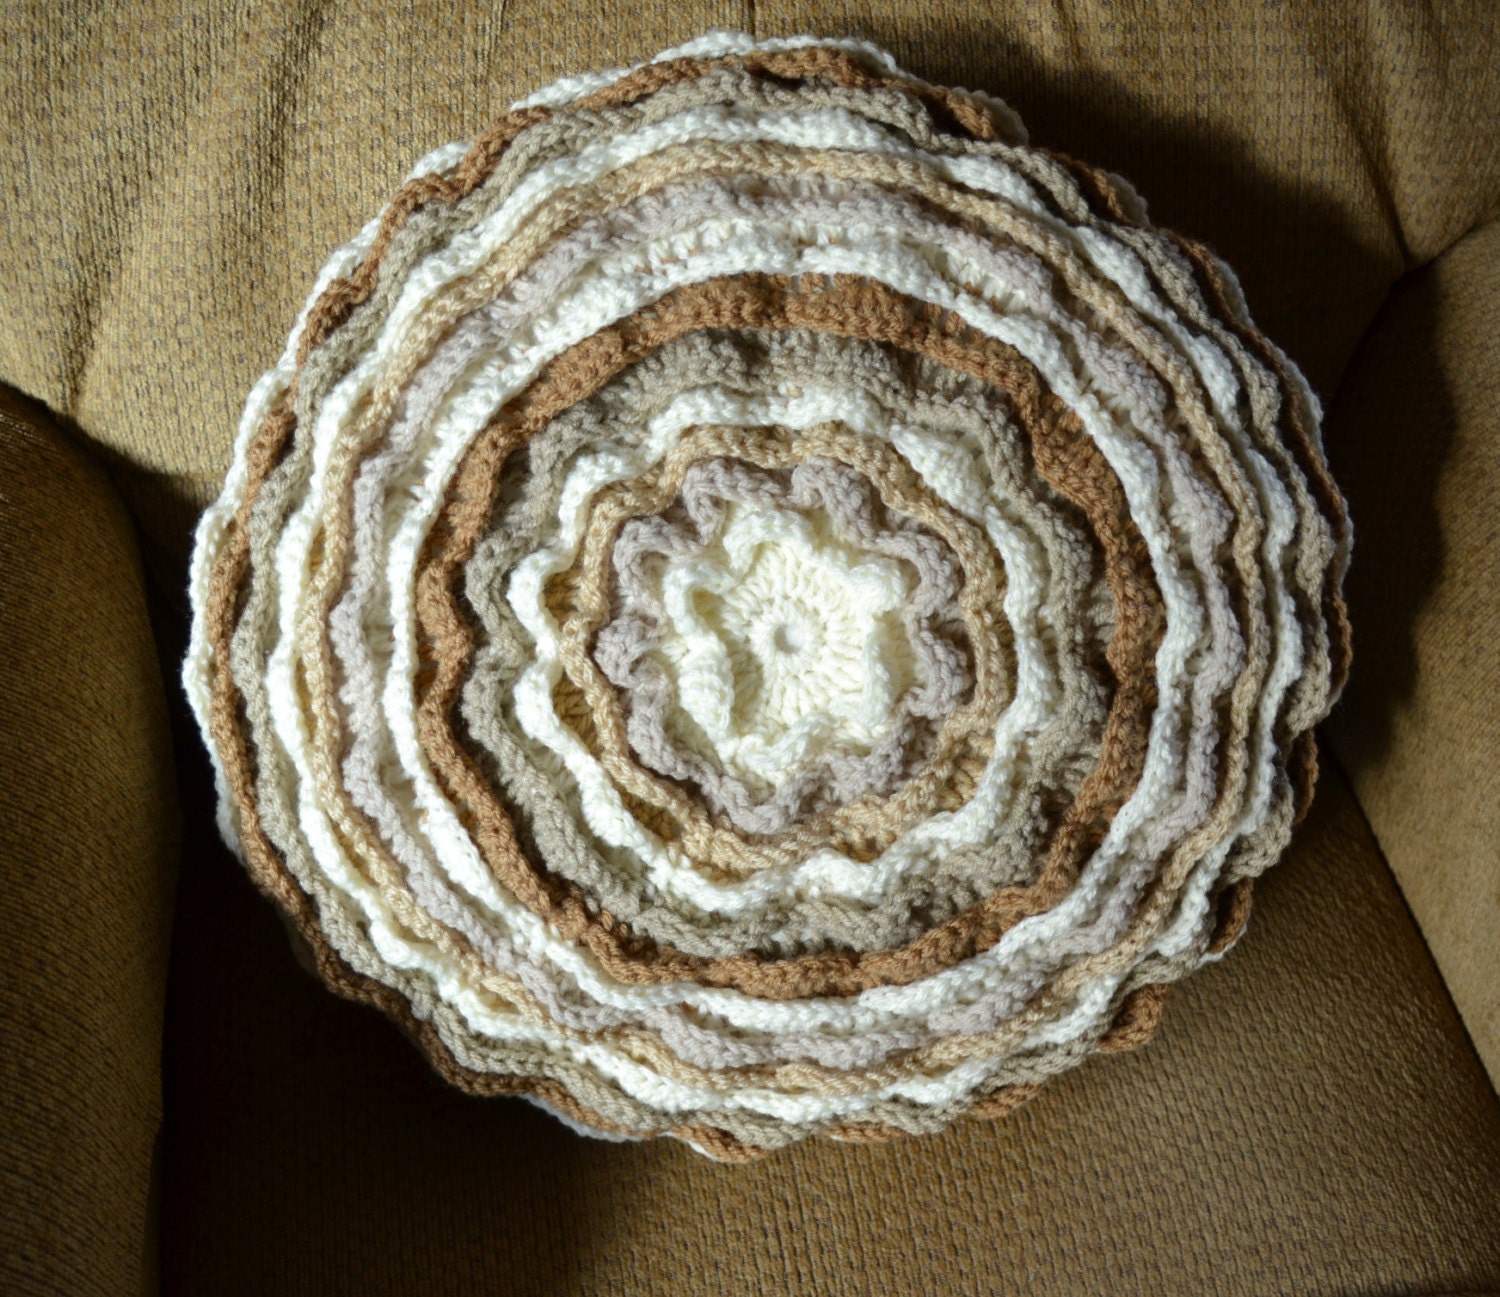 Crochet Pillow  Neutral Beige  Blooming  Flower Motif Throw Pillow Decorative Pillow Handmade LittlestSister - LittlestSister